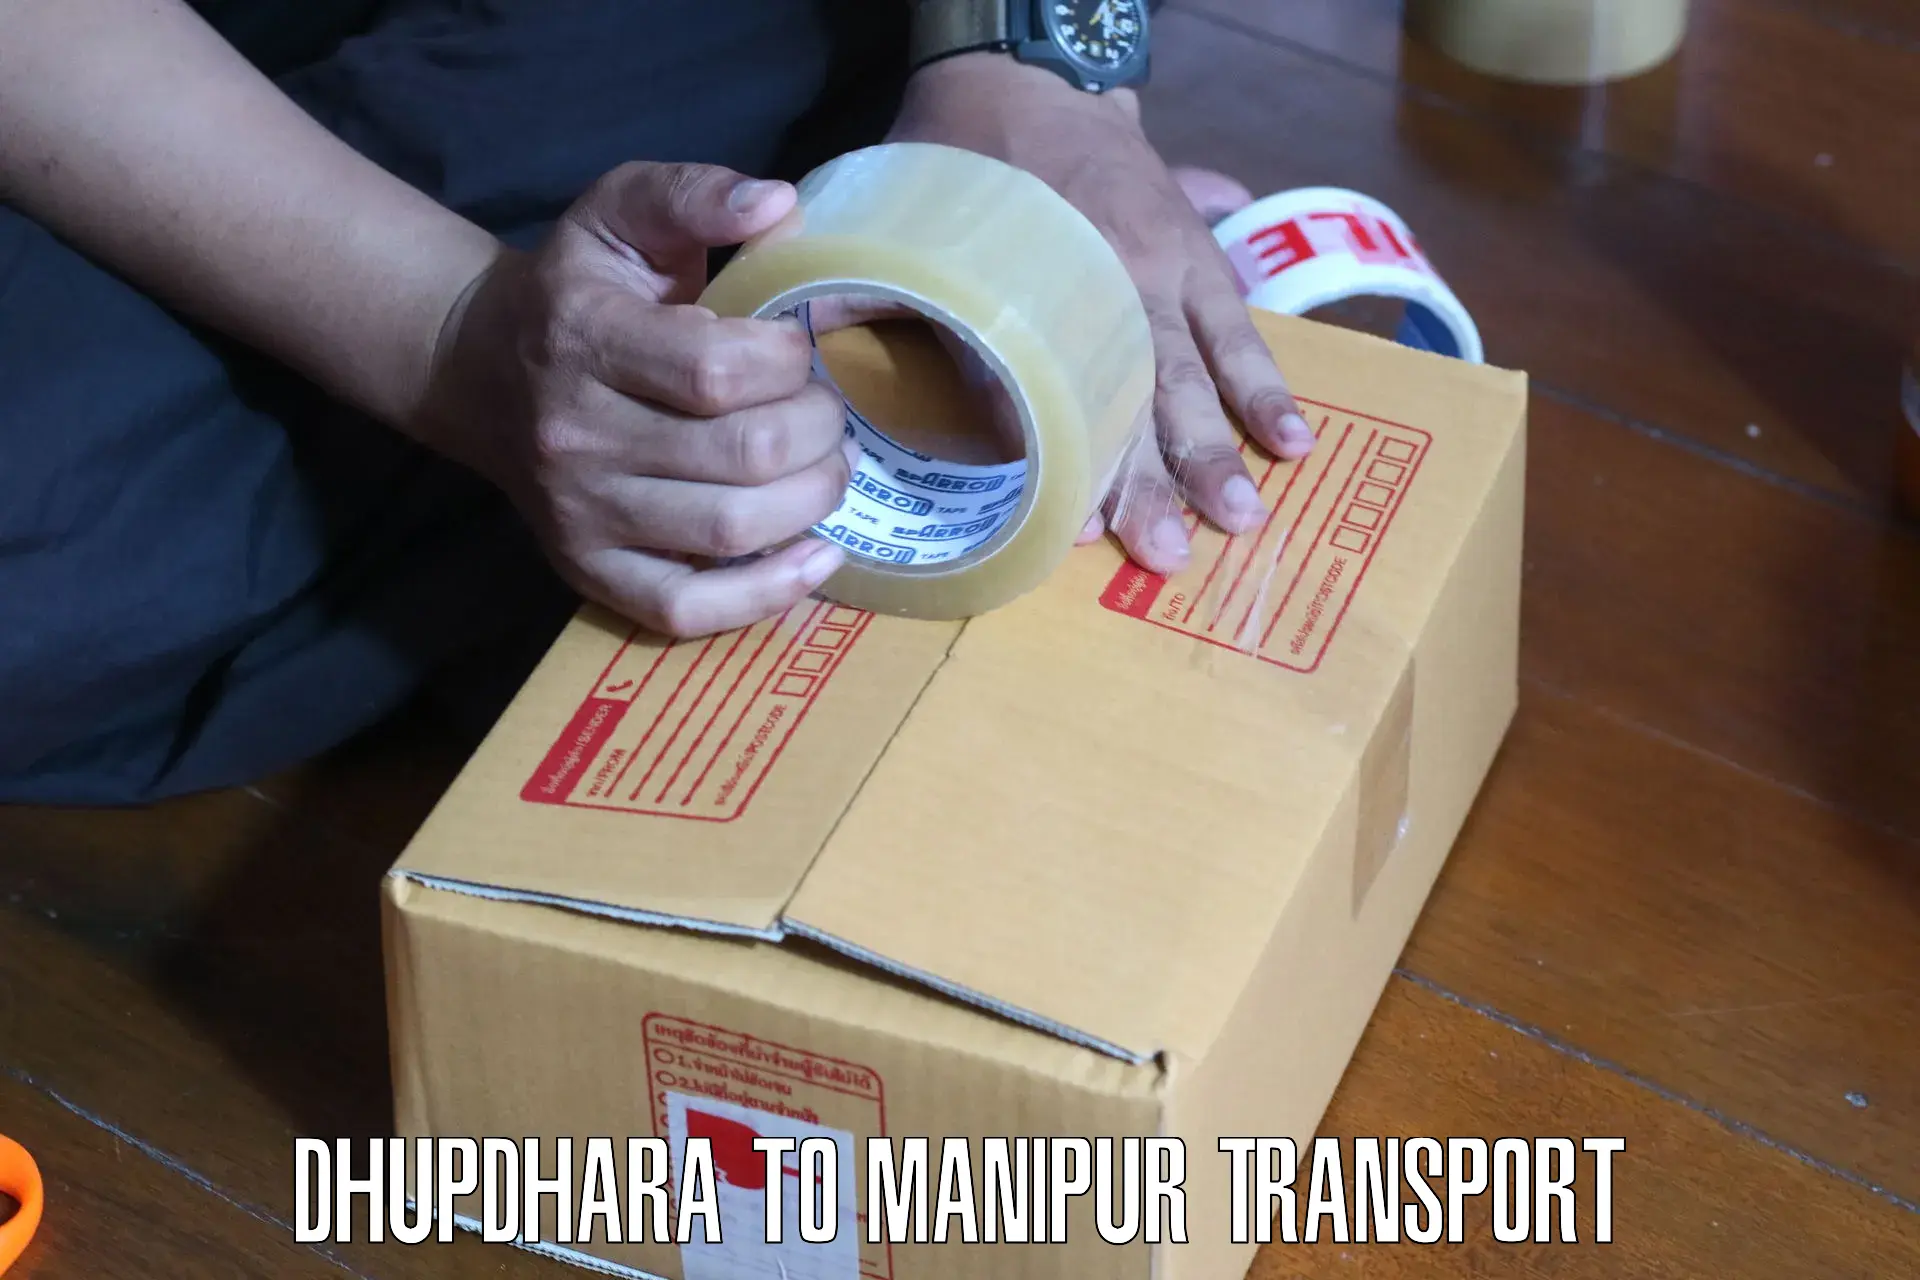 Pick up transport service Dhupdhara to Imphal